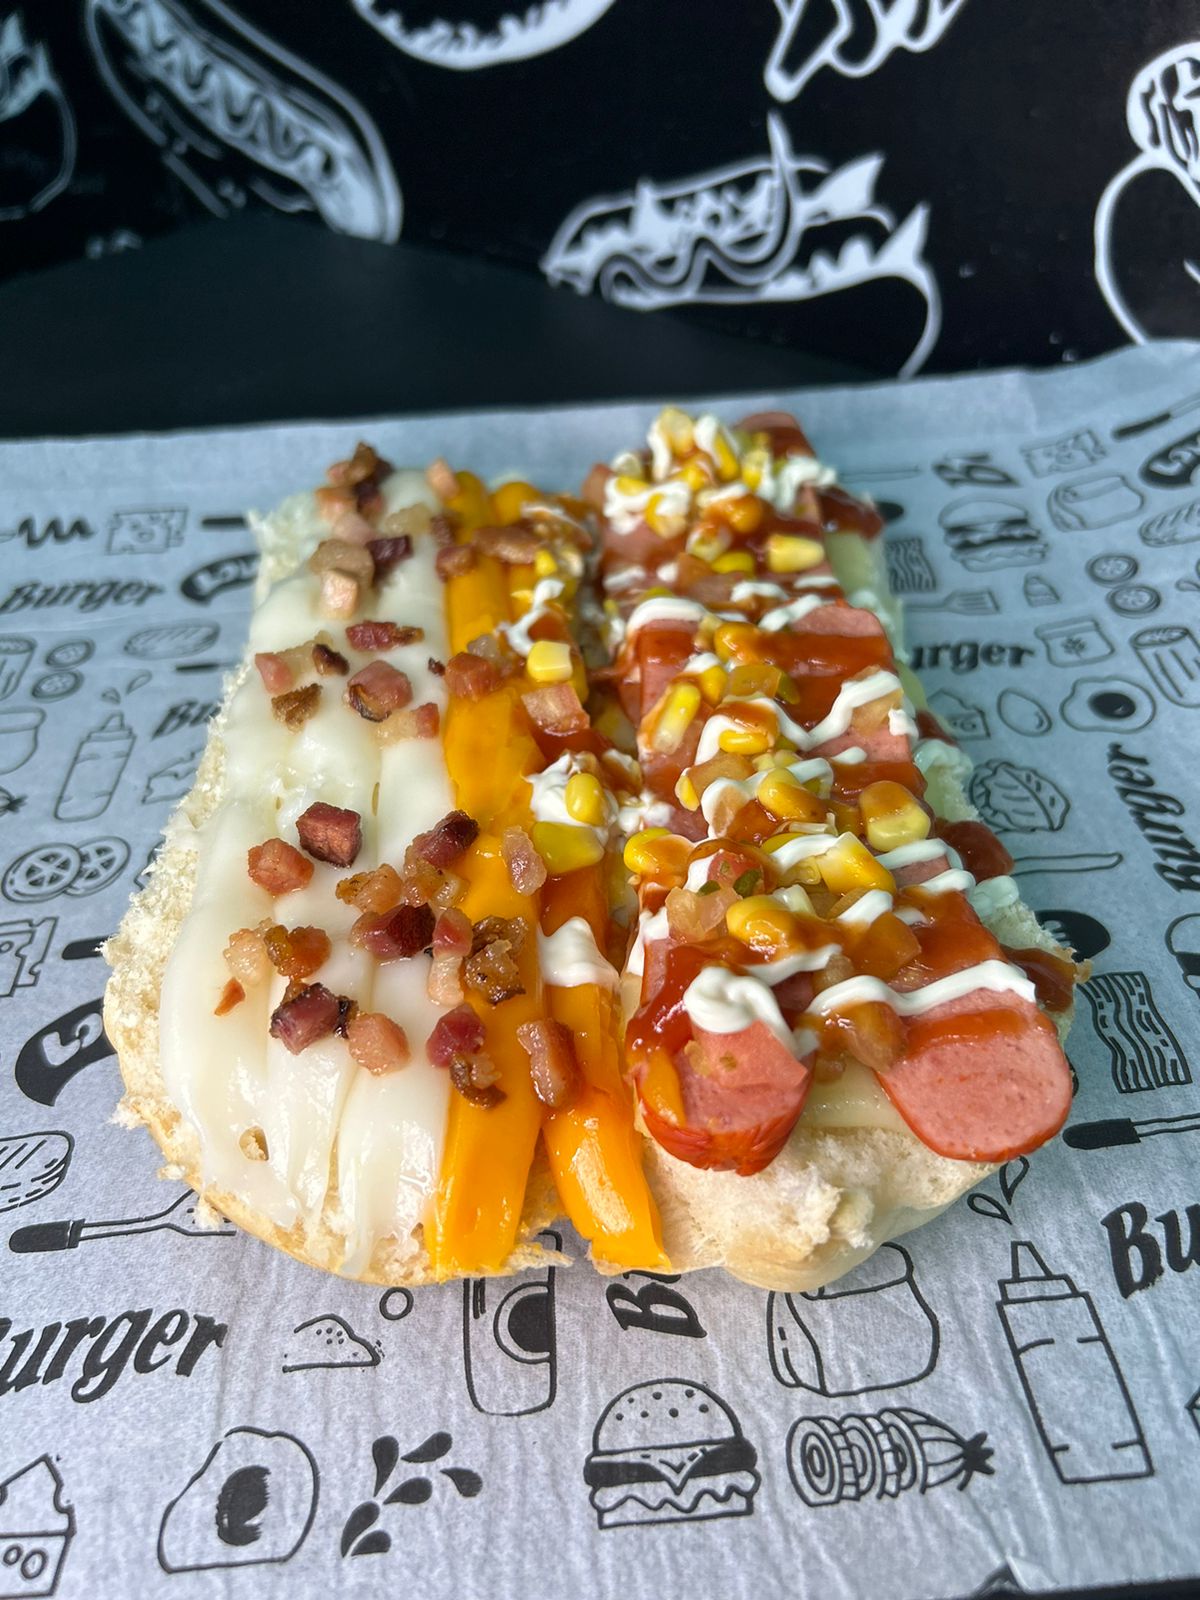 hot dog prensado